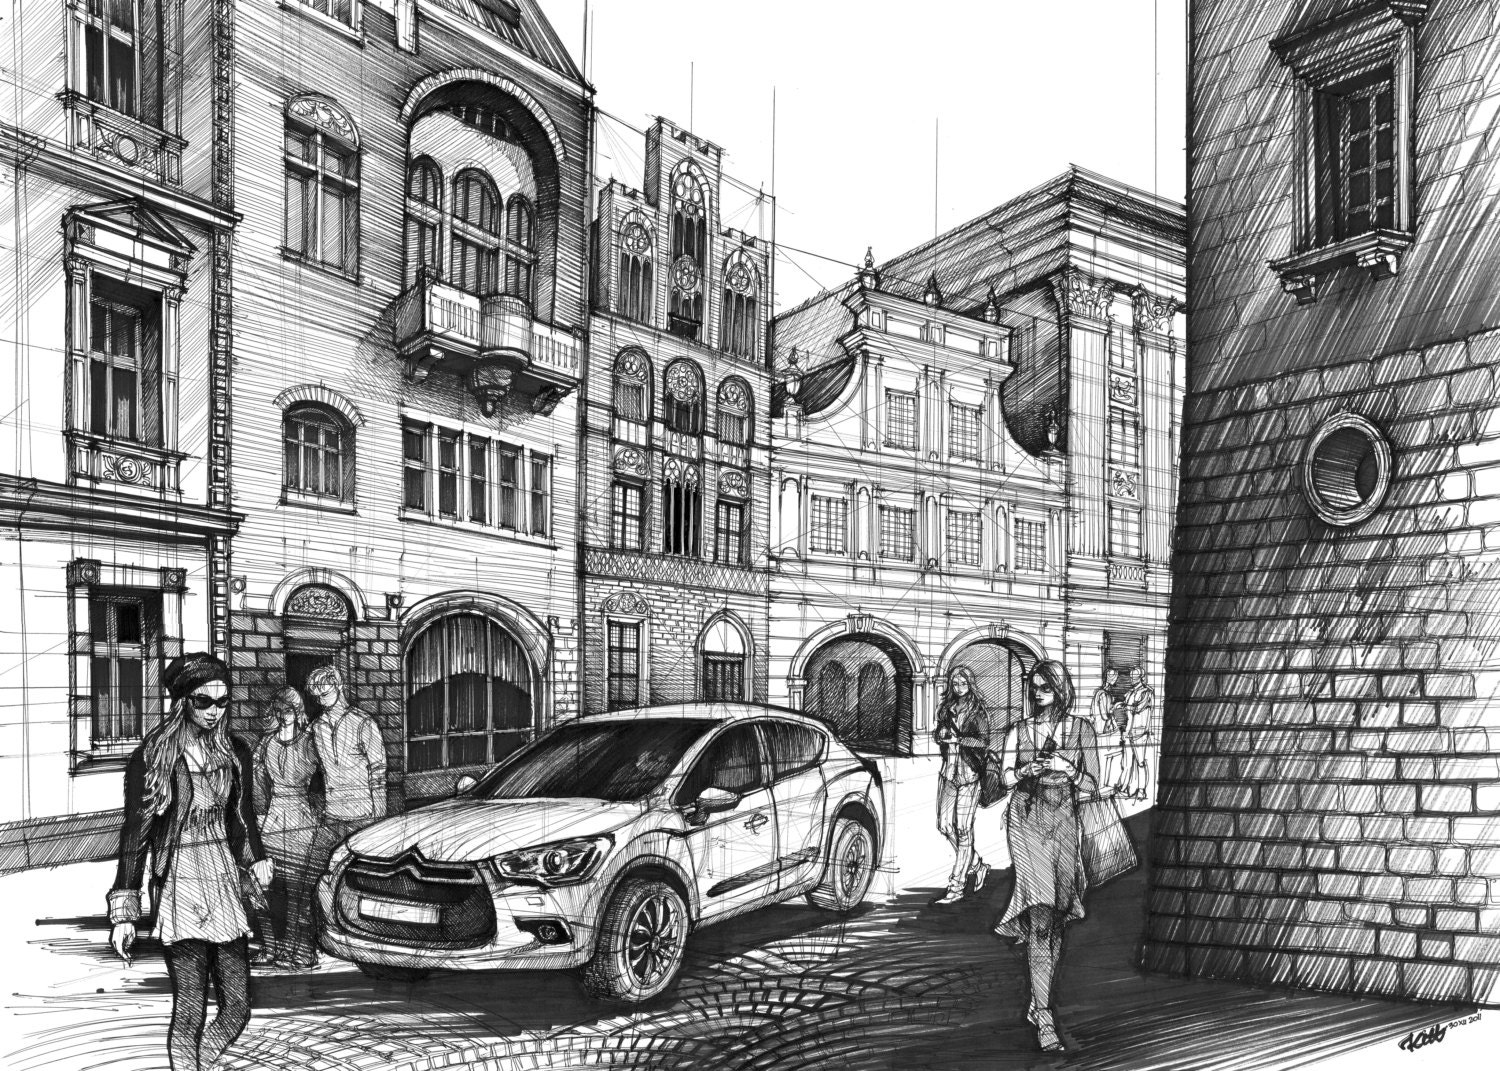 ORIGINAL street drawing by Katarzyna Kmiecik / urban sketch